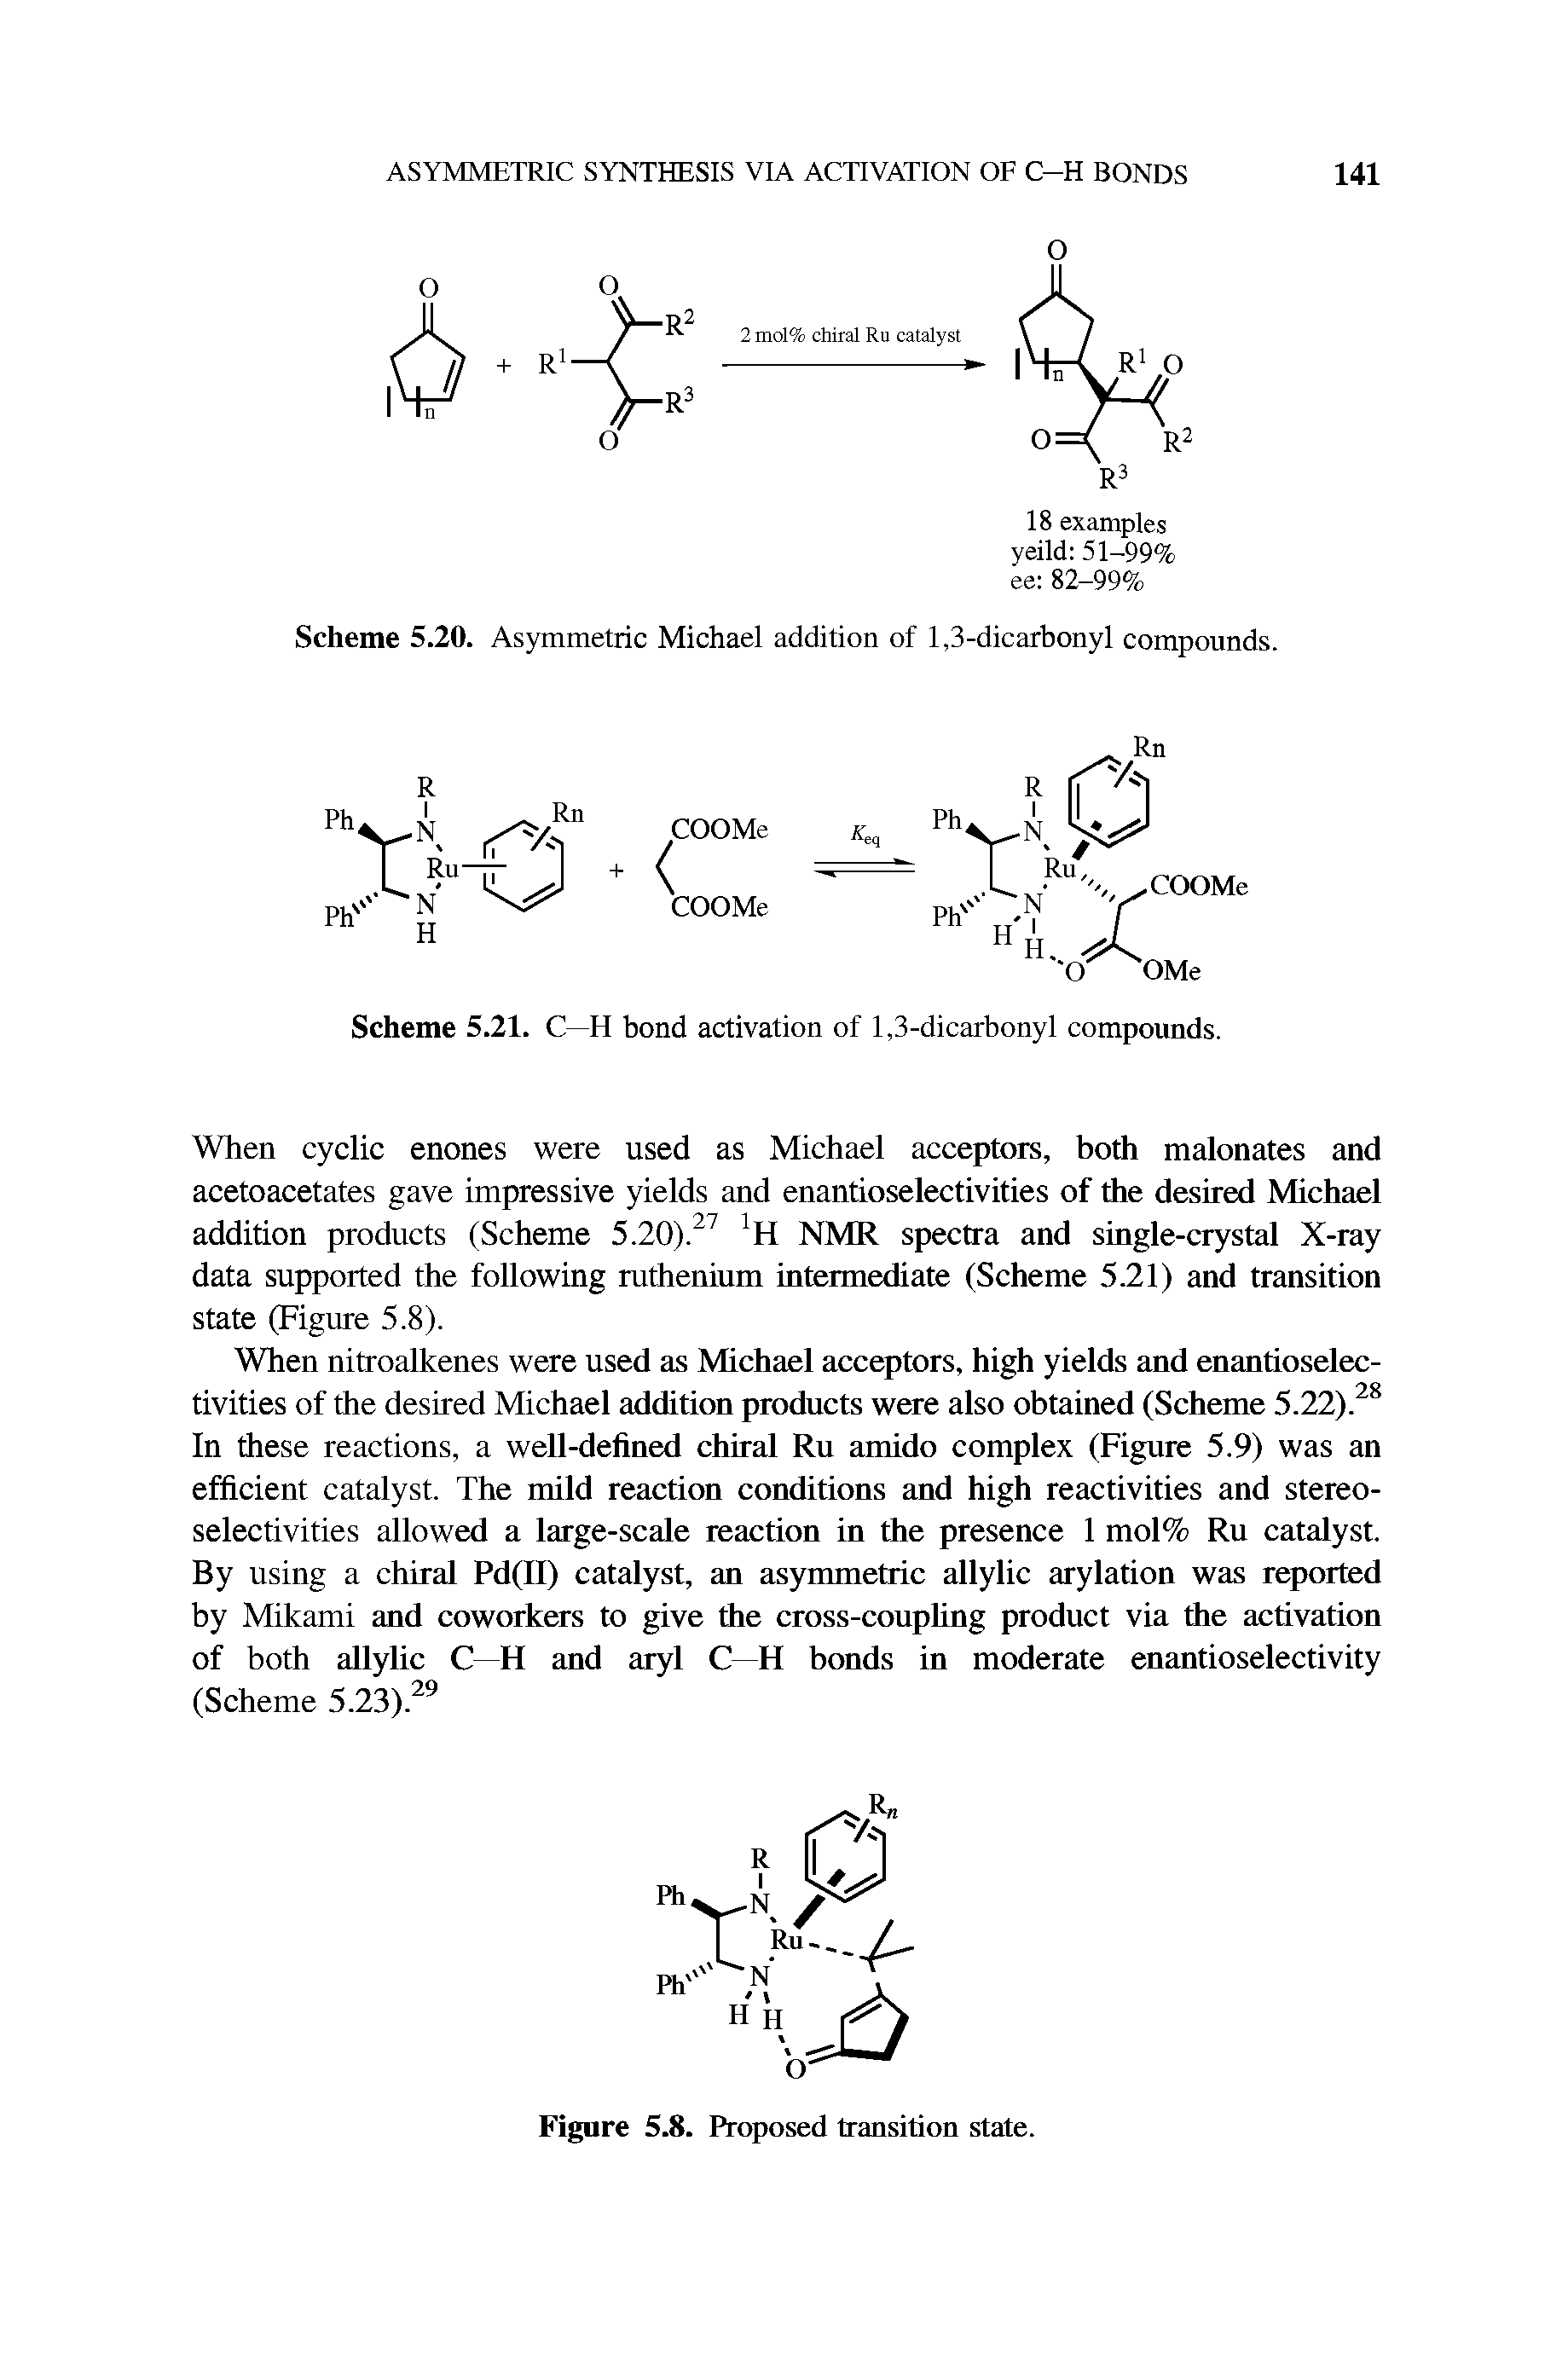 Scheme 5.20. Asymmetric Michael addition of 1,3-dicarbonyl compounds.